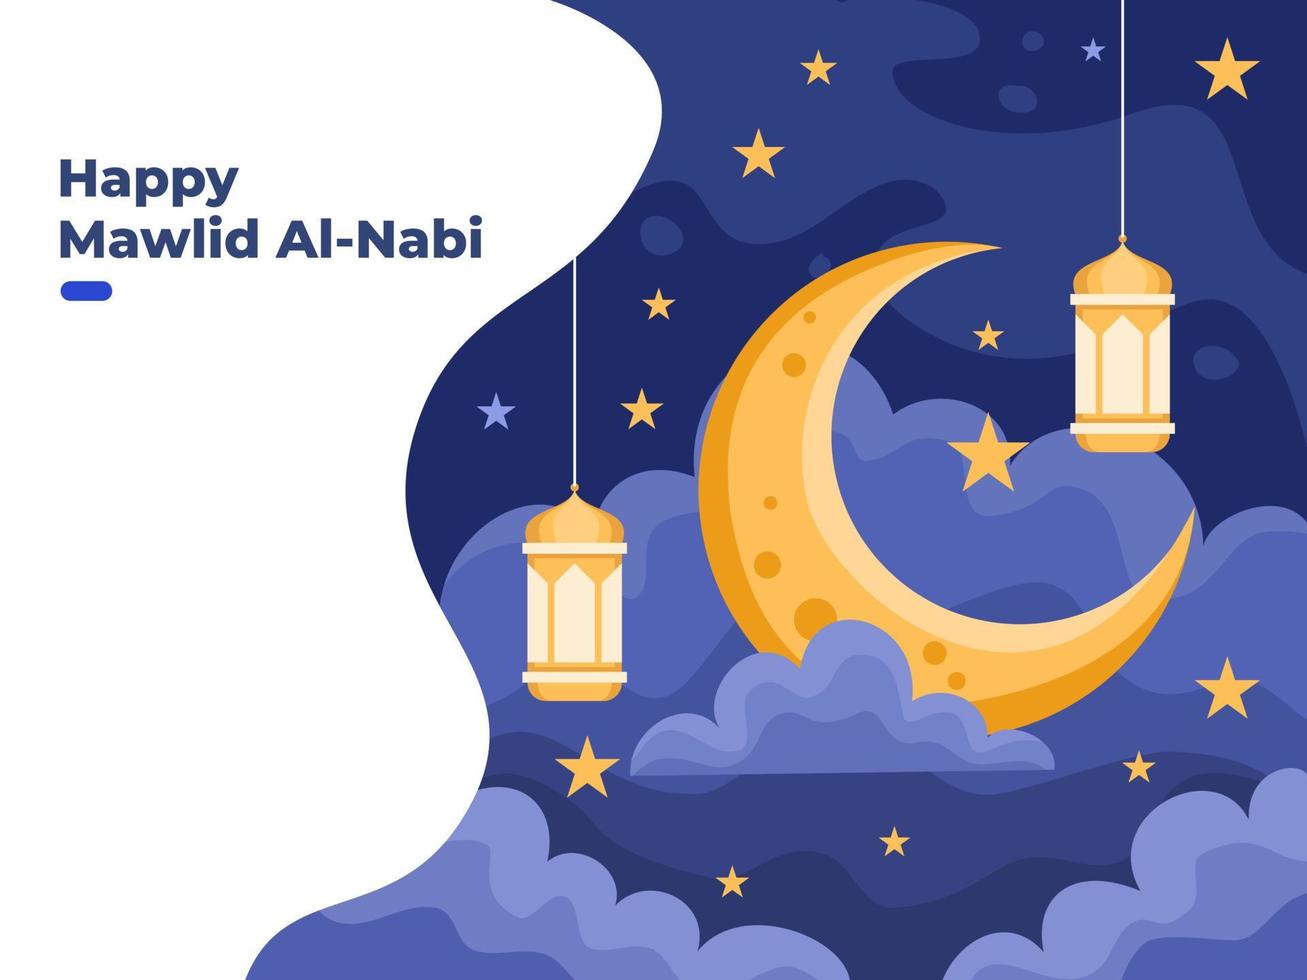 mawlid al nabi o ilustración de cumpleaños del profeta muhammad con luna, estrellas y linternas de luz colgantes. se puede utilizar para tarjetas de felicitación, tarjetas postales, web, pancartas, publicaciones en redes sociales. vector